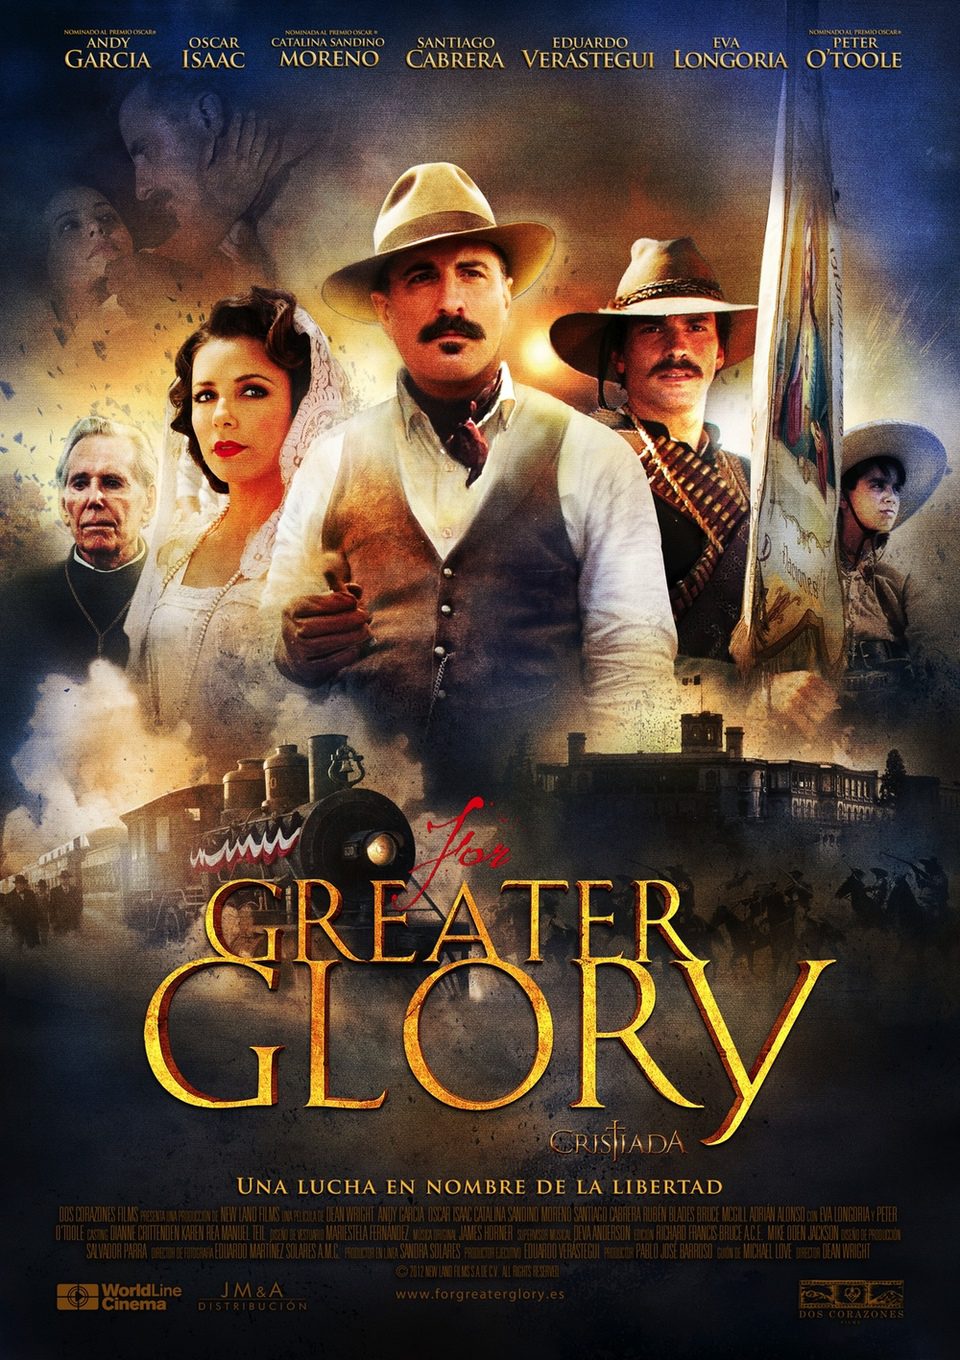 Cartel de For Greater Glory (Cristiada) - España